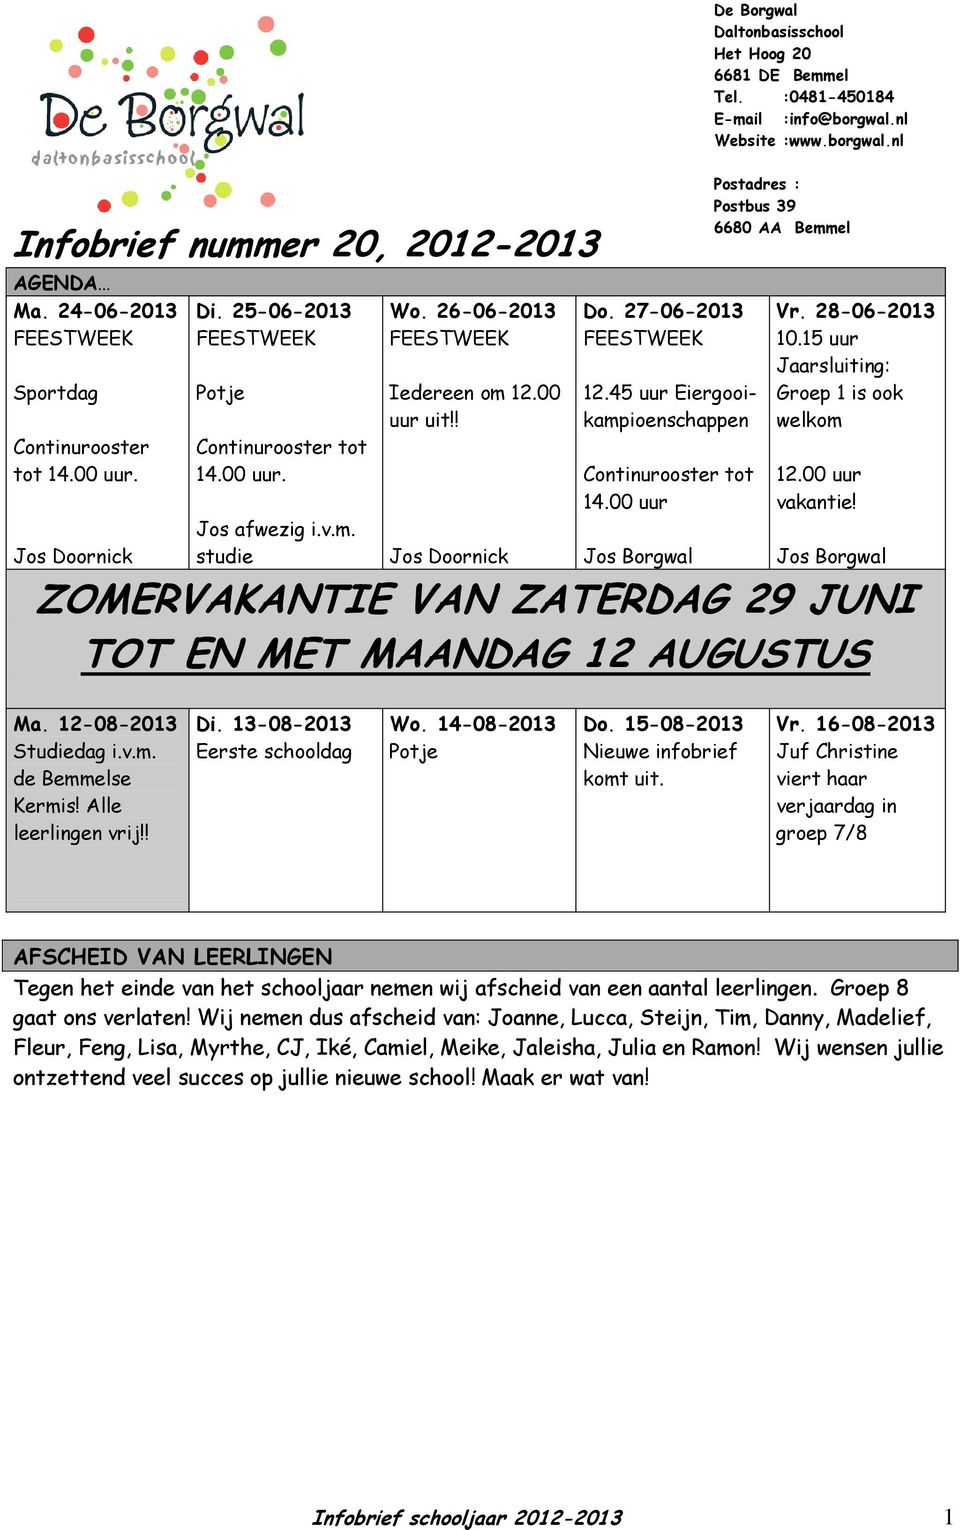 00 uur Jos Borgwal De Borgwal Daltonbasisschool Het Hoog 20 6681 DE Bemmel Tel. :0481-450184 E-mail :info@borgwal.nl Website :www.borgwal.nl Postadres : Postbus 39 6680 AA Bemmel Vr. 28-06-2013 10.